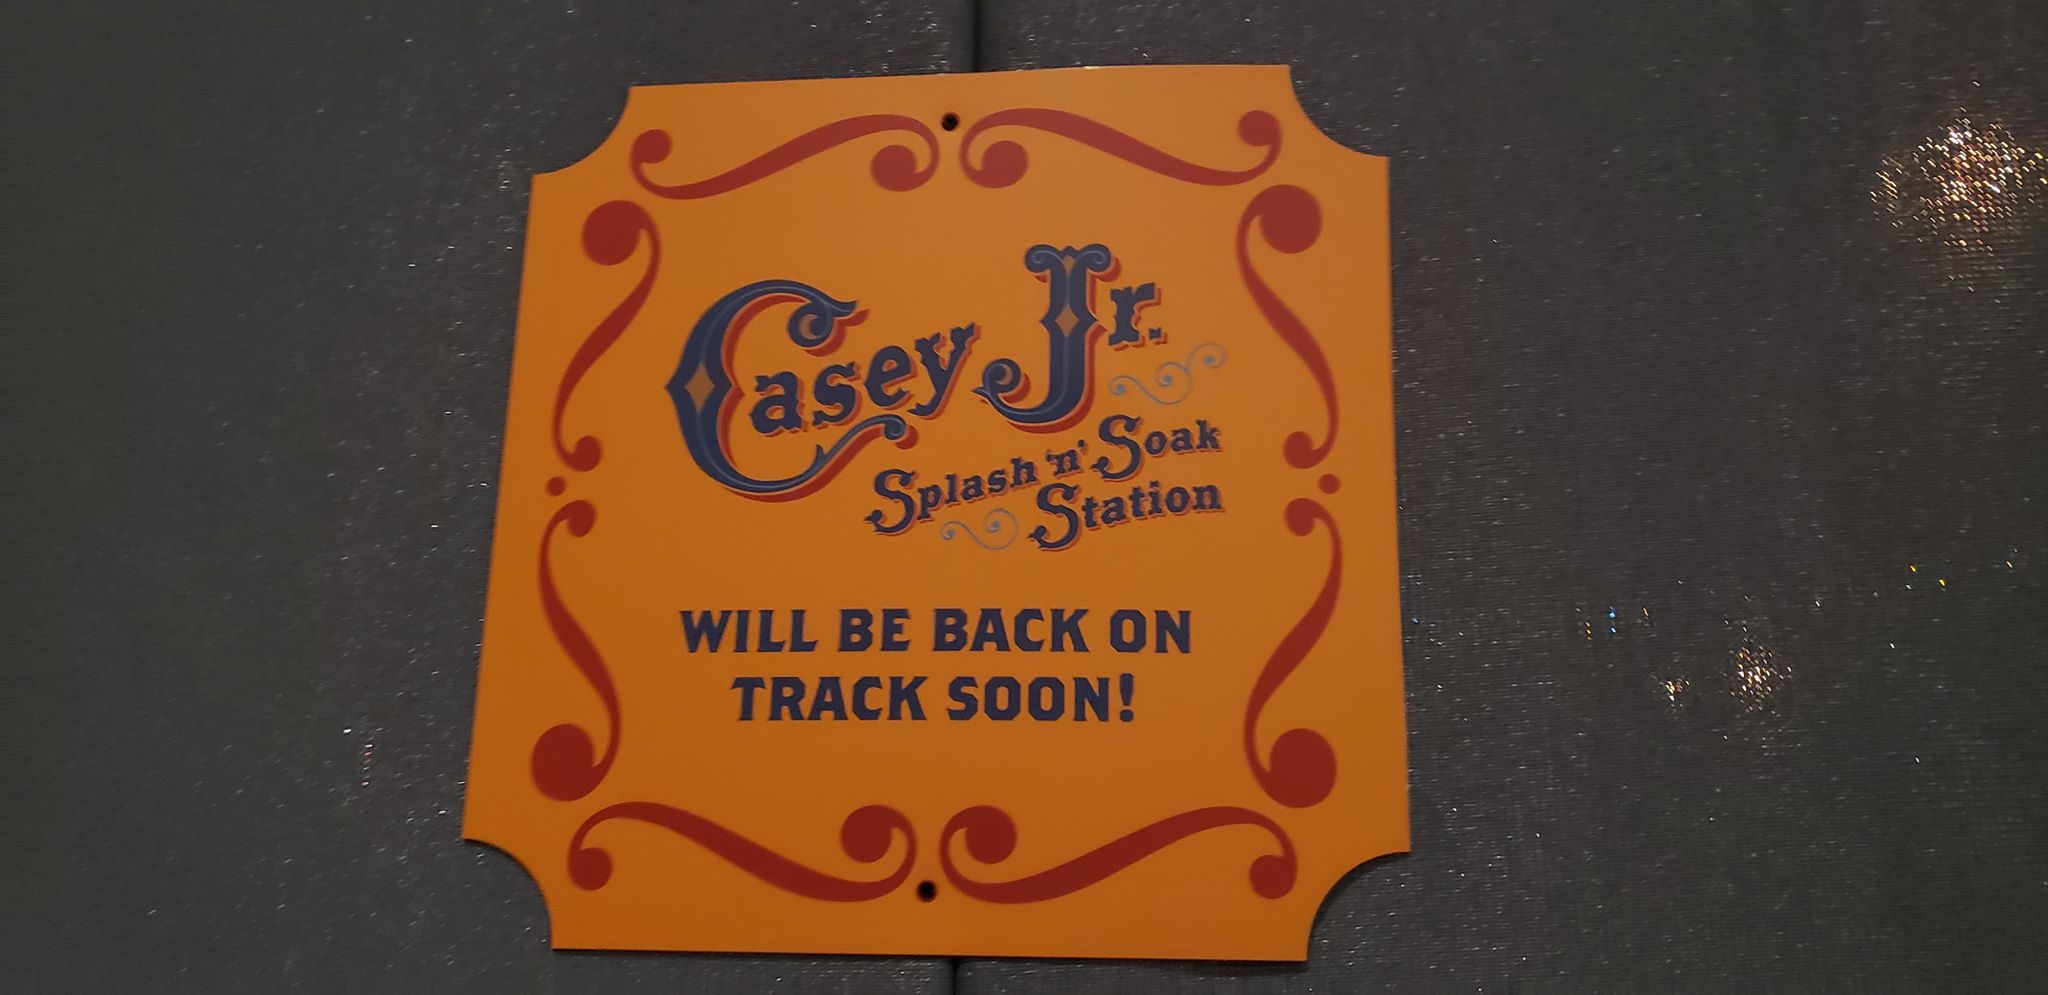 Casey Jr. Splash ‘N’ Soak Refurbishment Updates